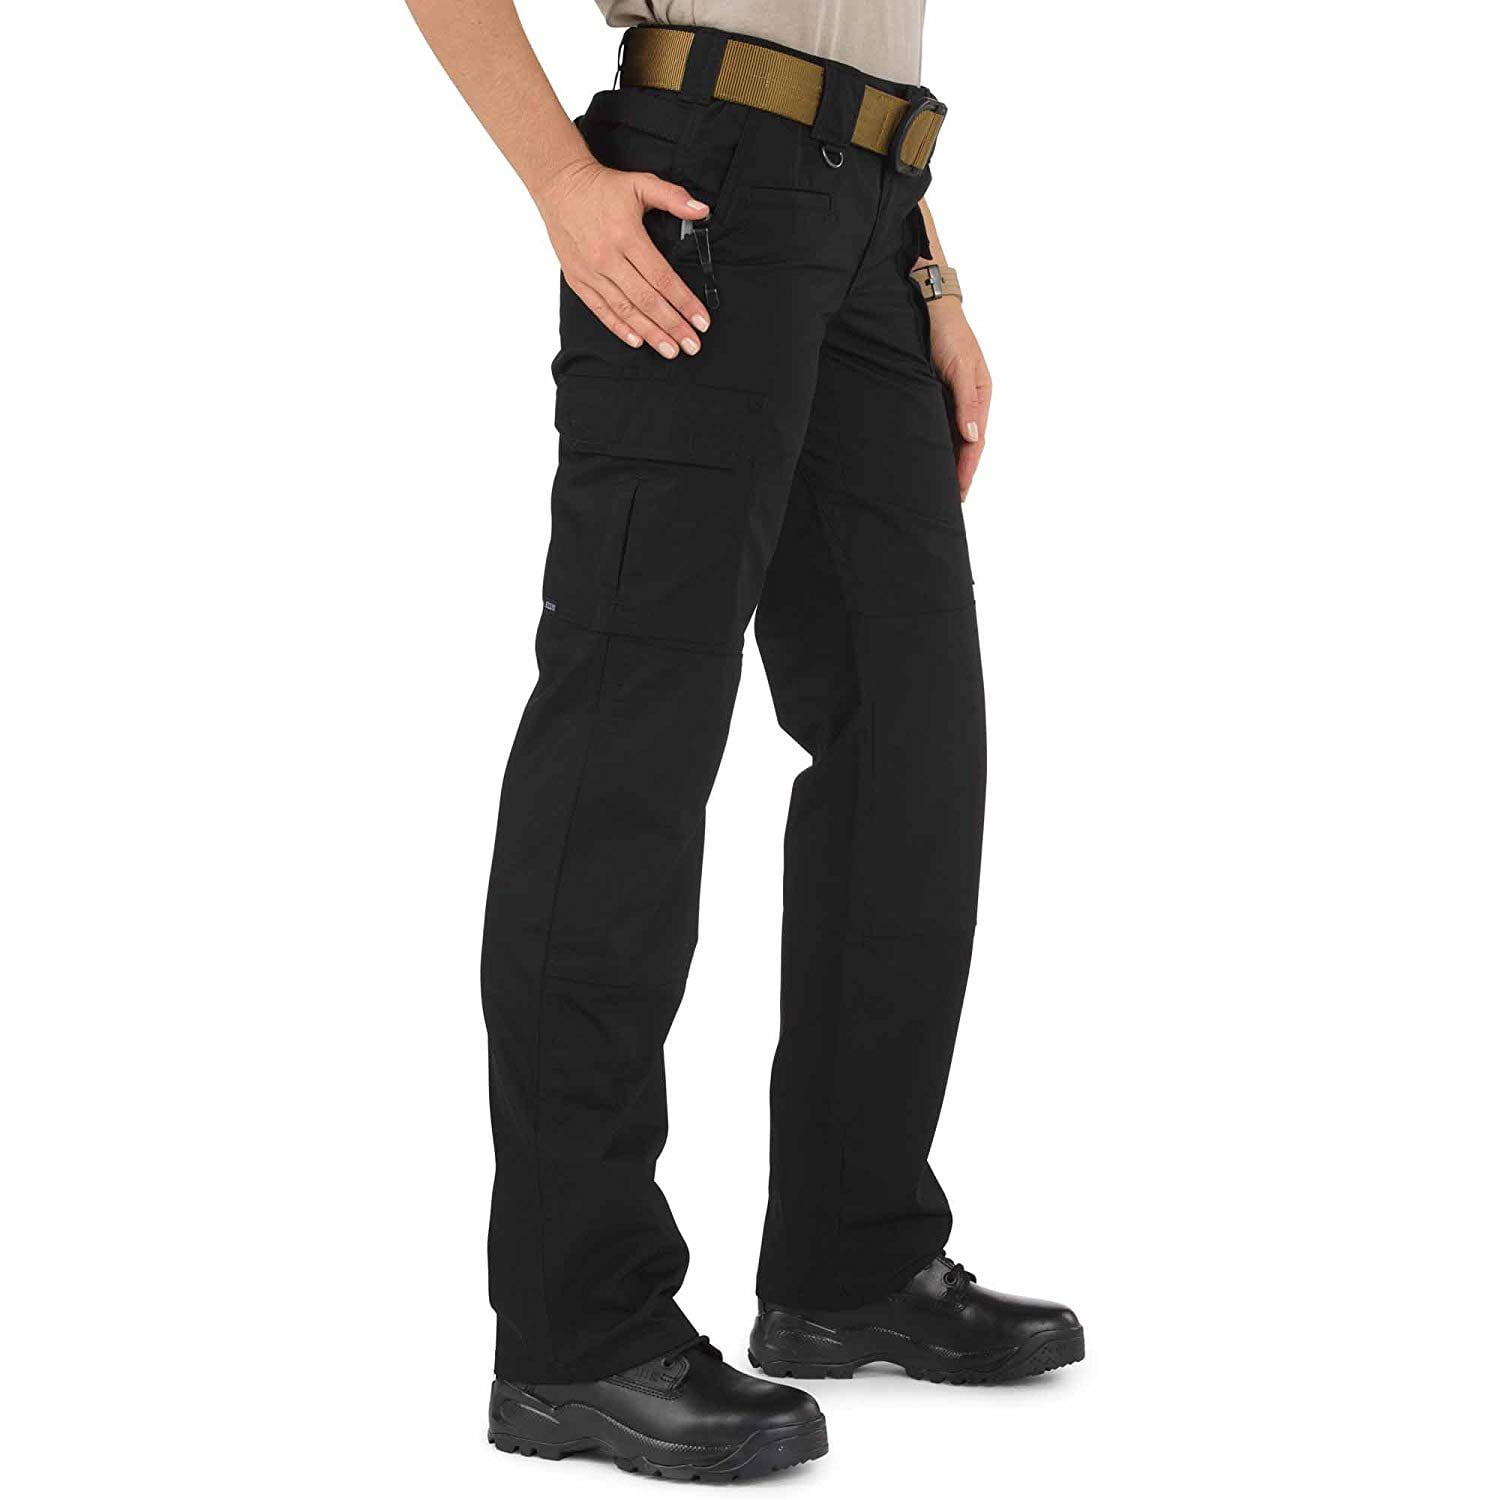 5.11 Tactical 5.11 Tactical Womens Pants Taclite Pro 64360 TAN KHAKI Size 14 Regular #11 